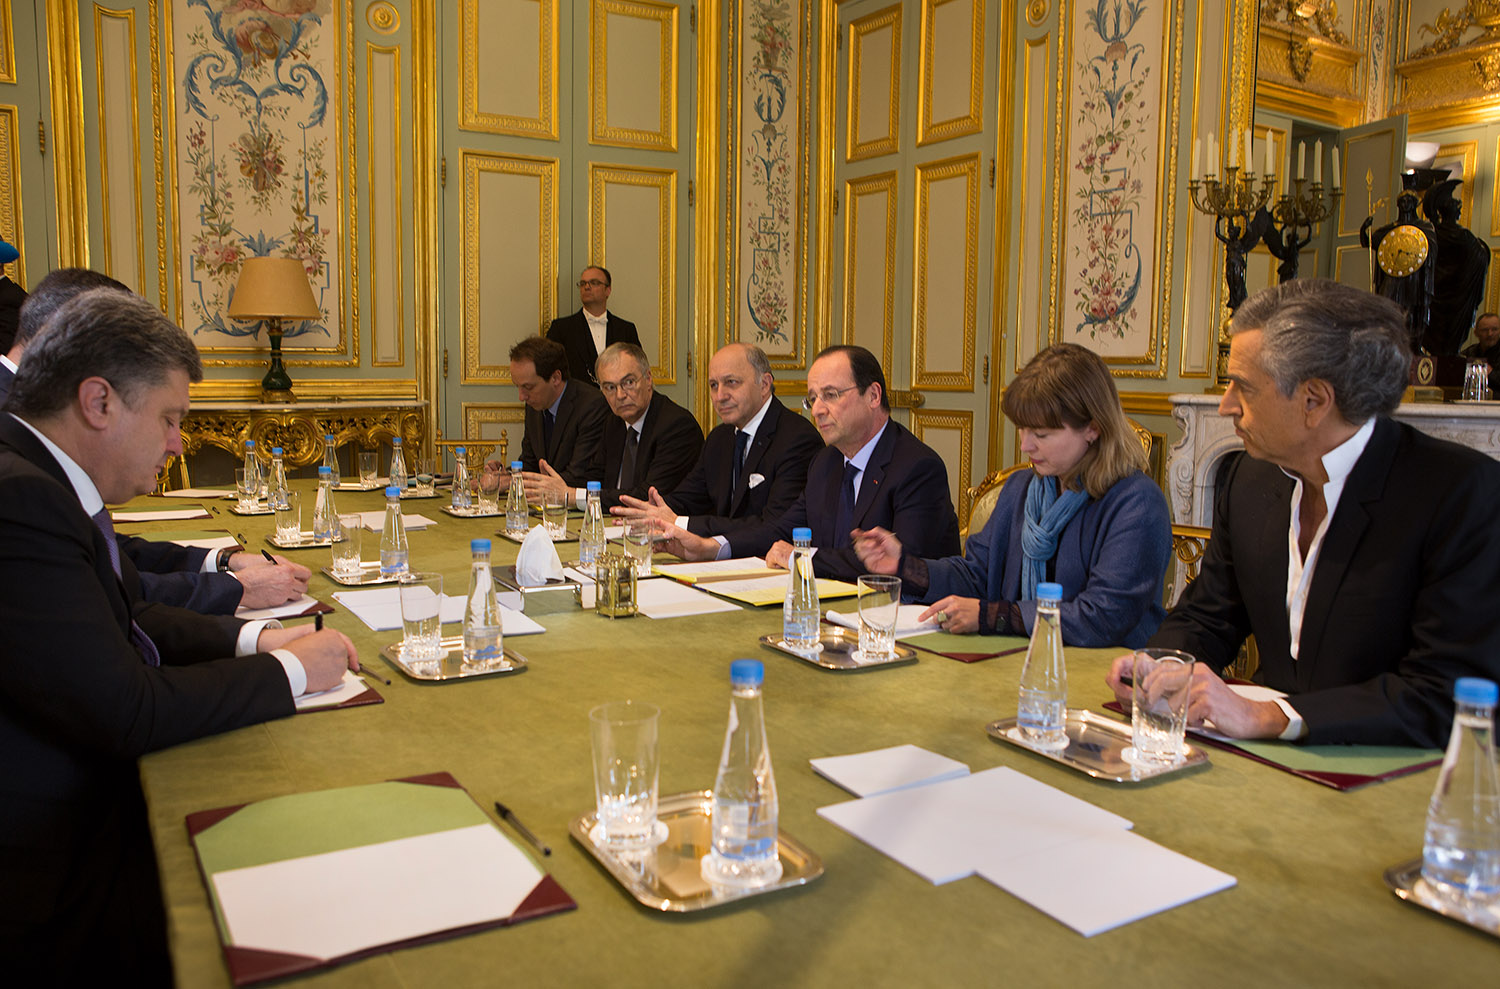 Accompagnés par Bernard-Henri Lévy, Vitali Klitschko et Petro Porochenko, échangent avec le Président François Hollande et Laurent Fabius alors en charge du Ministère des Affaires étrangères, à l'Élysée, dans la salle du Conseil des Ministres.